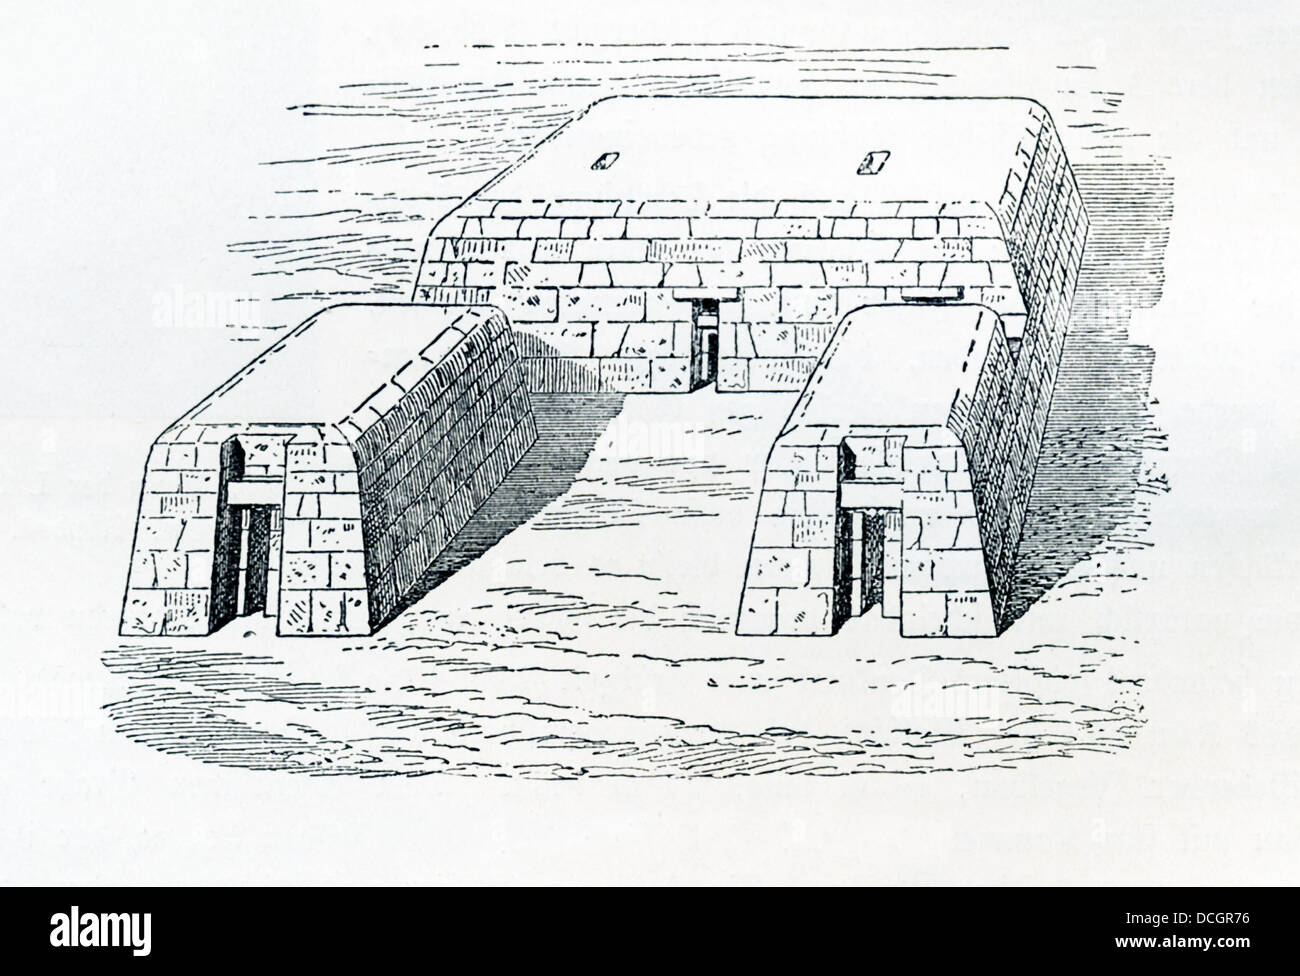 Un mastaba (celui de Giza), du mot arabe pour "sur la touche", était une structure en pierre ou mudbrick à sommet plat et parois en pente. Banque D'Images